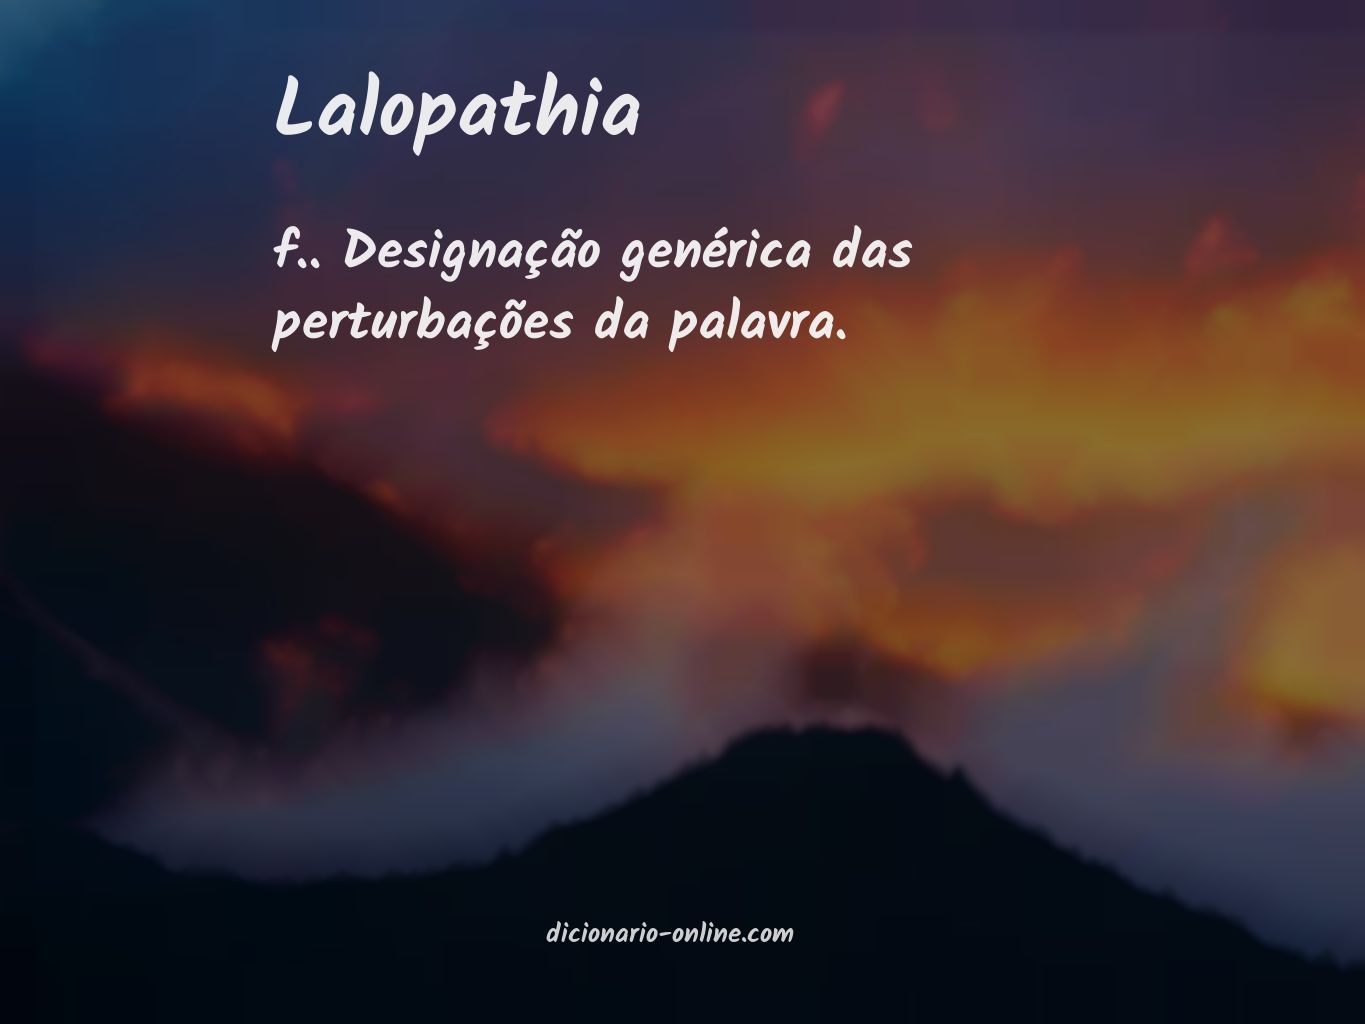 Significado de lalopathia